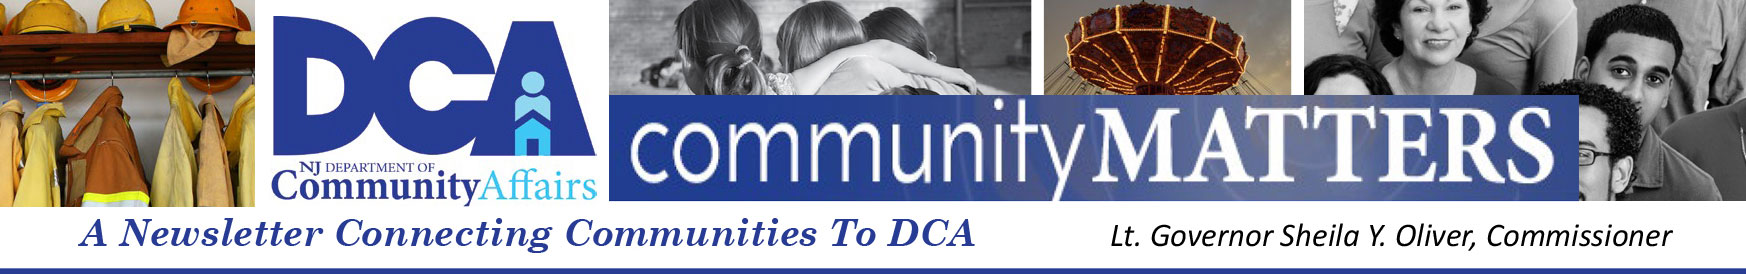 Community Matters - DCA Newsletter